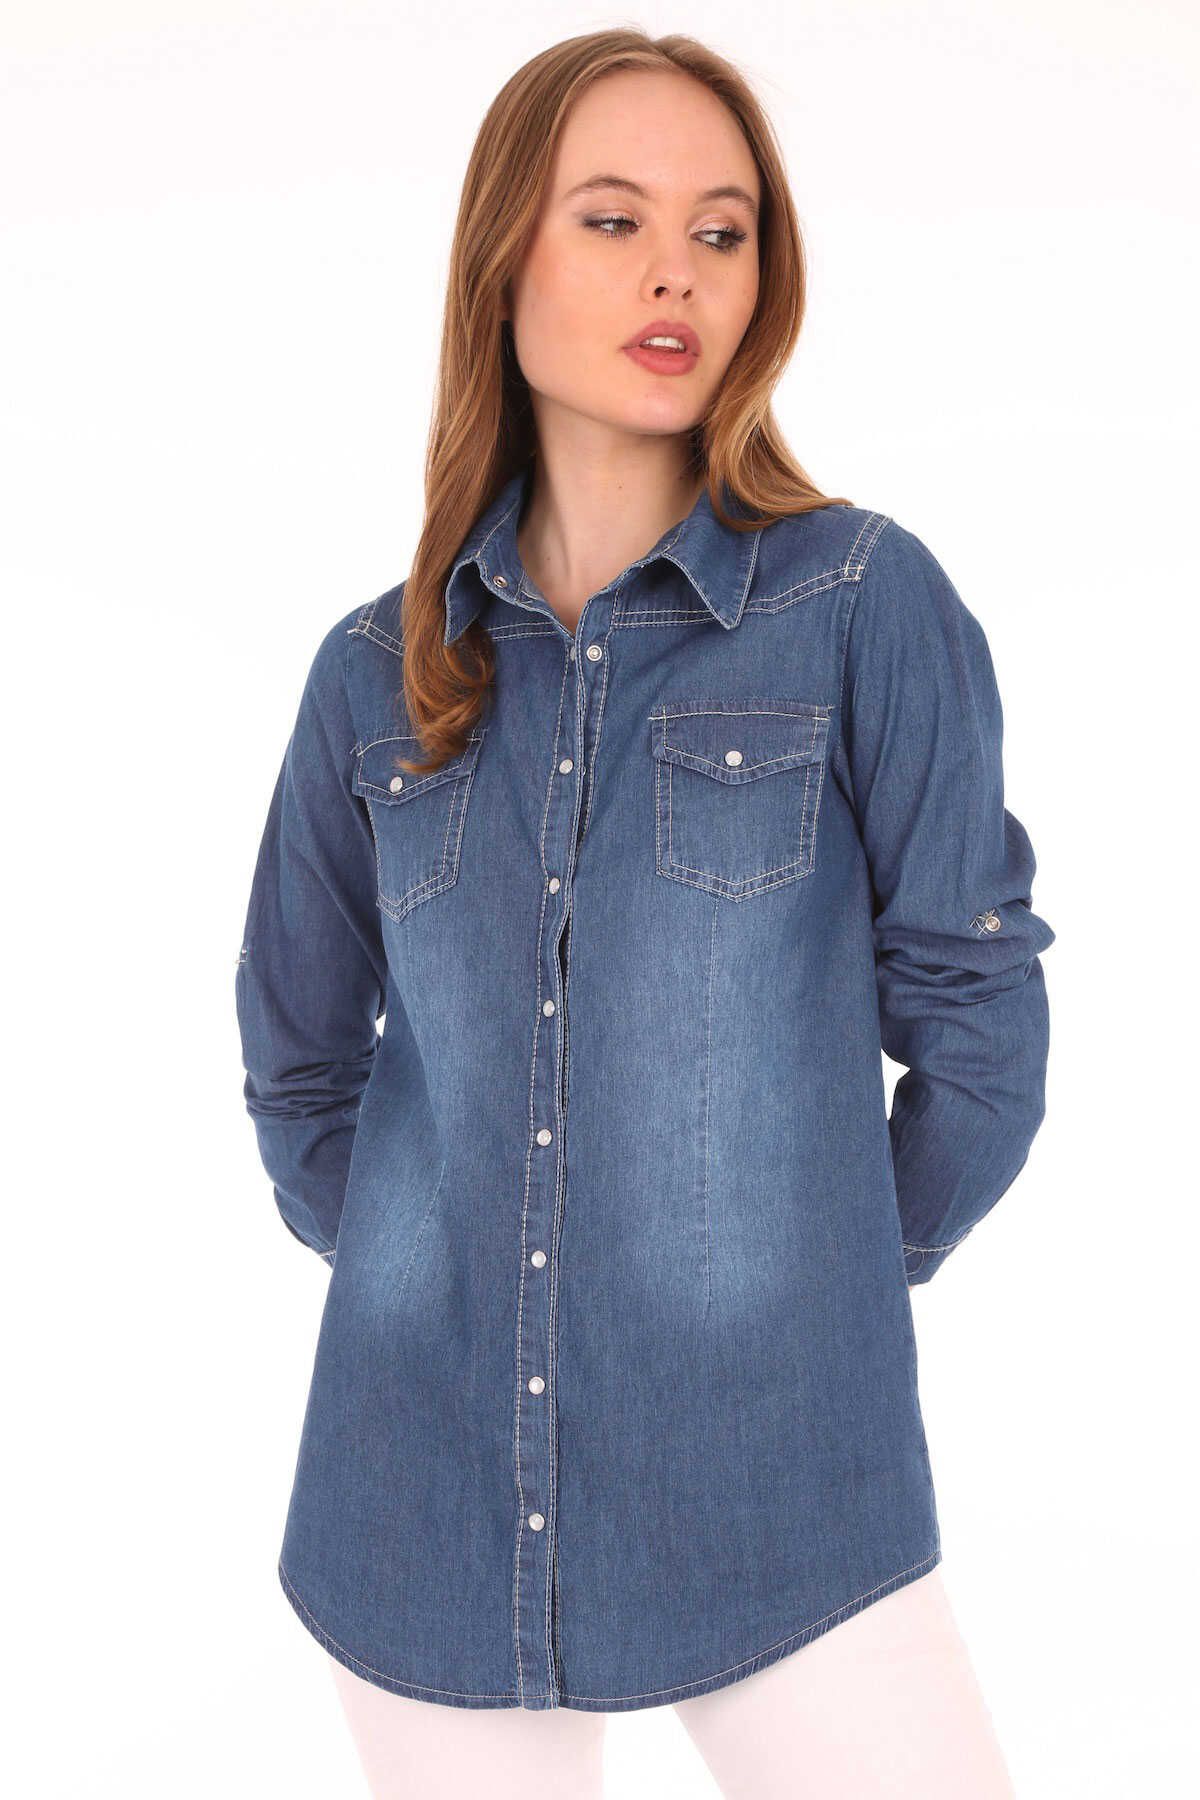 Z GİYİM Kadın Mavi Kolu Katlamalı Çıtçıt Düğmeli Kot Gömlek